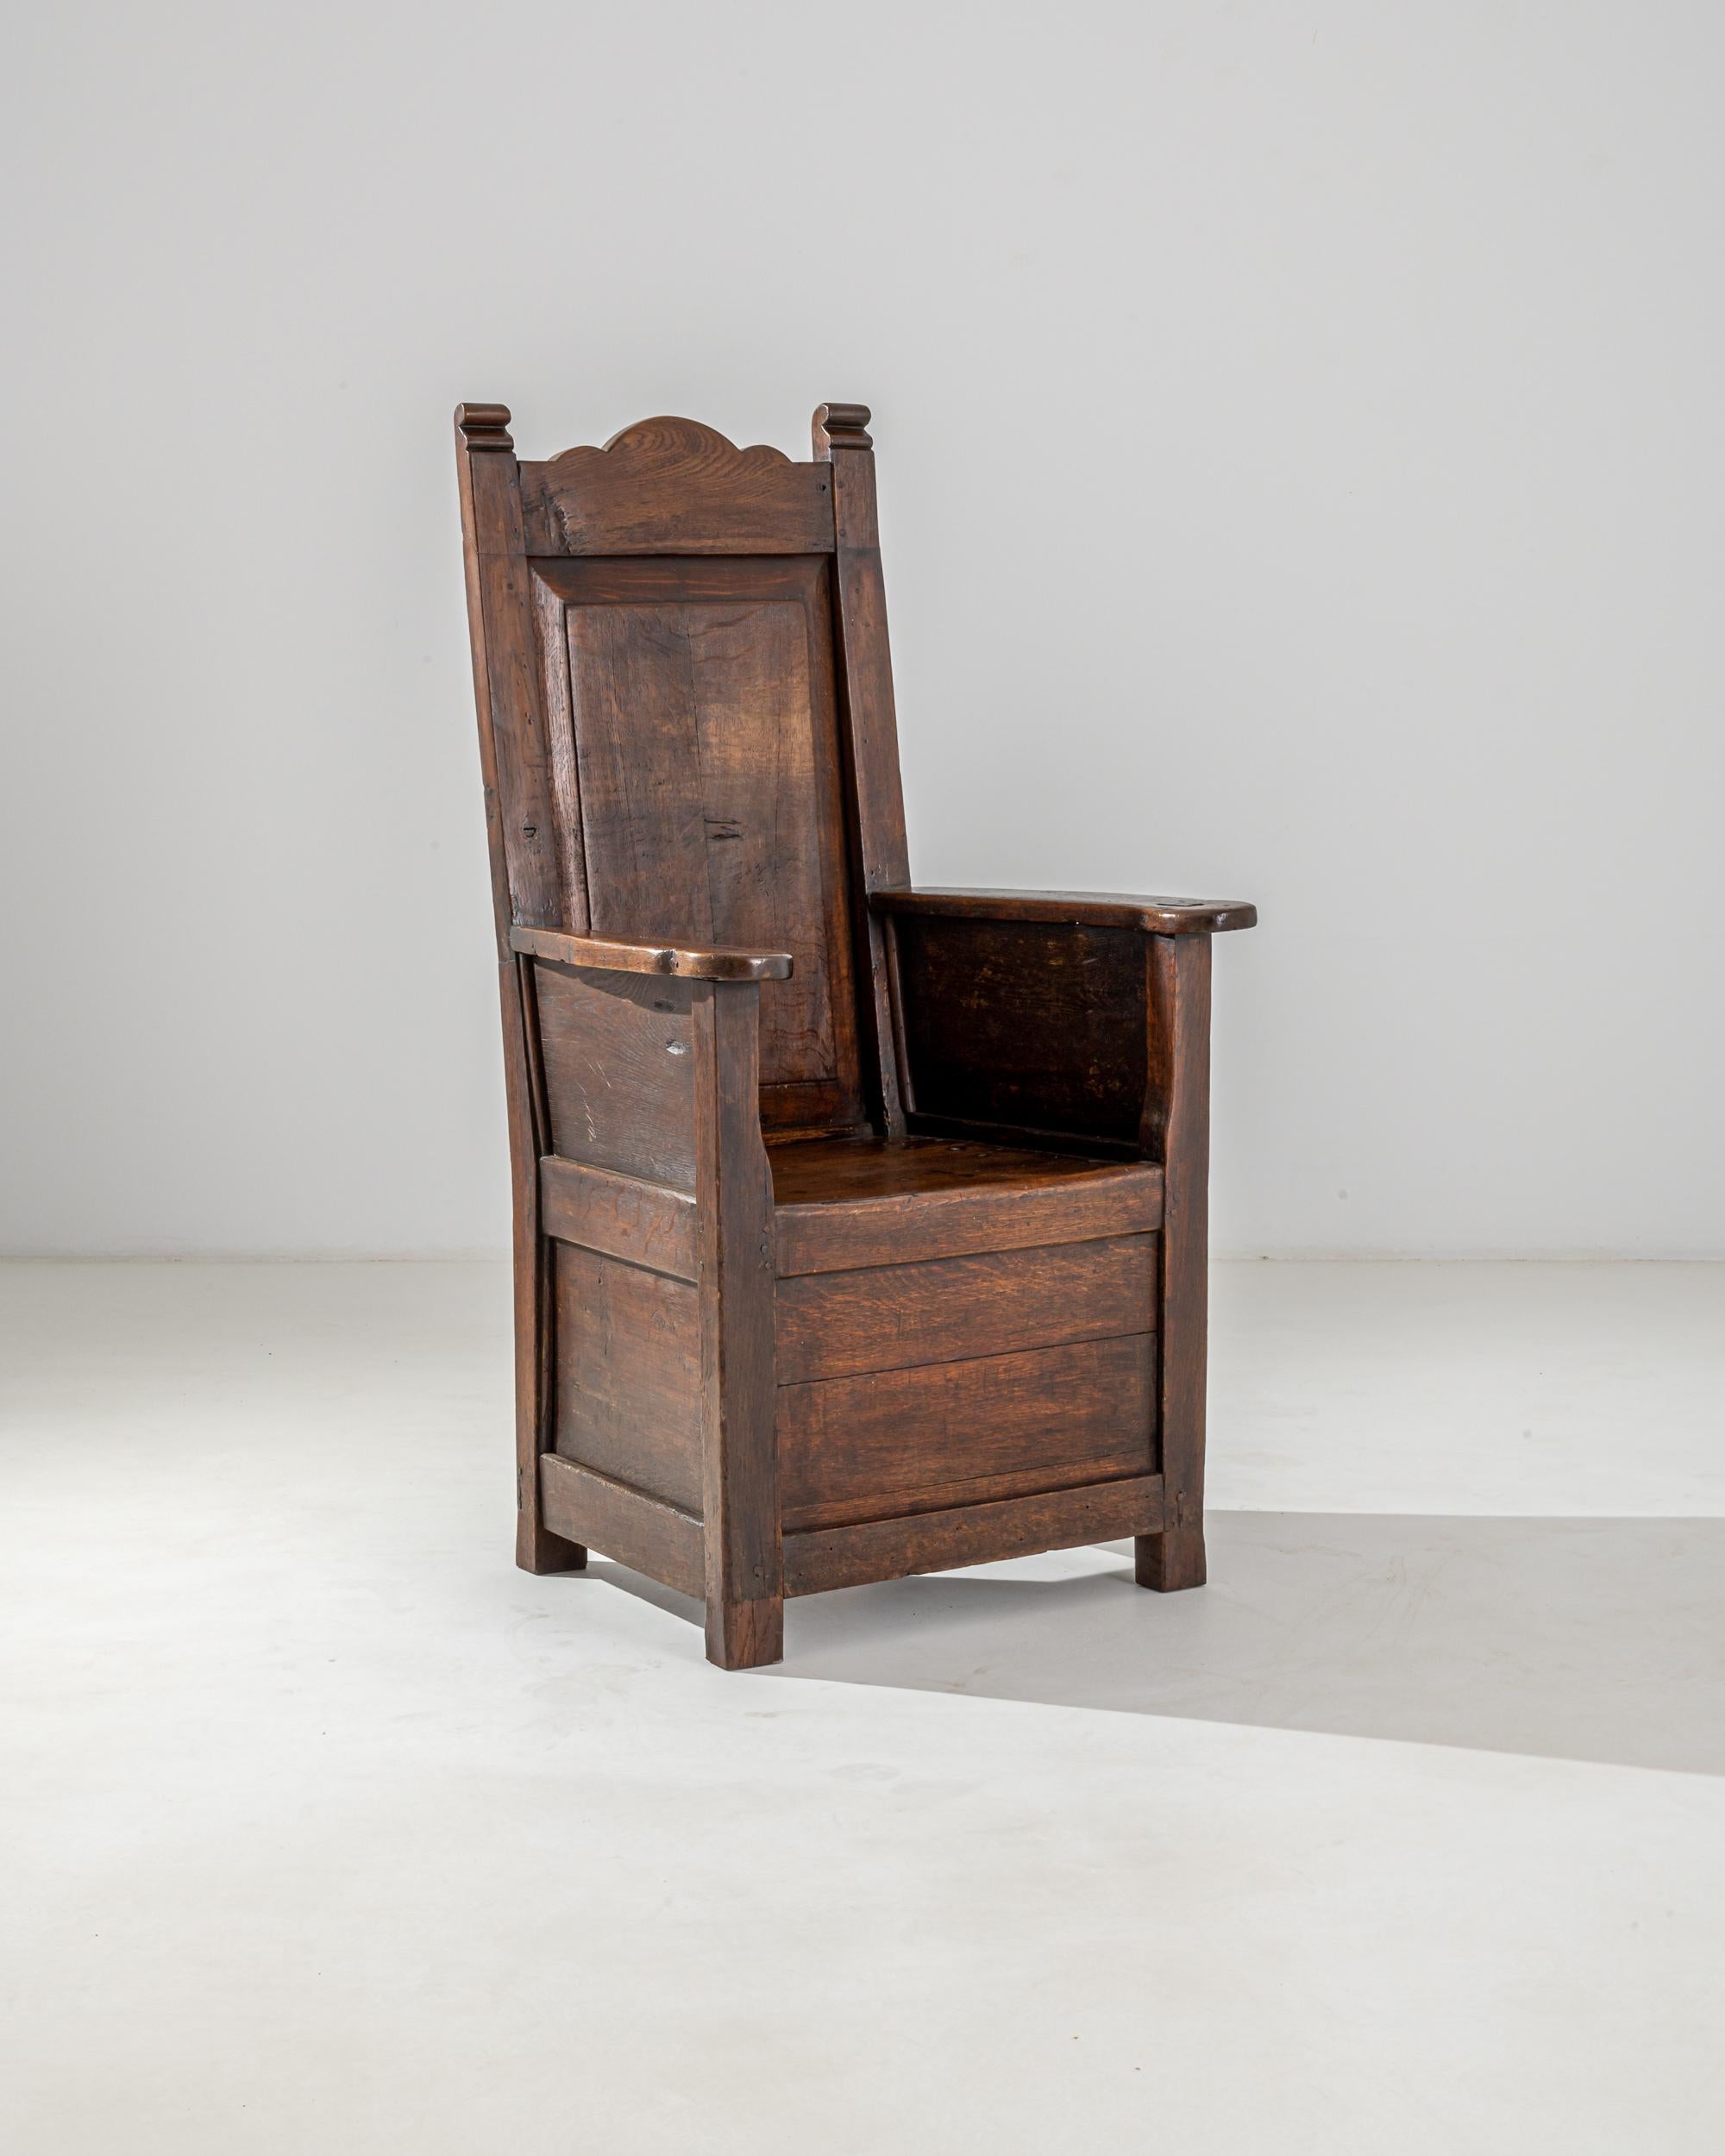 Die thronartige Silhouette und die reiche Patina verleihen diesem antiken Stuhl eine erhabene Würde. Im 18. Jahrhundert in Frankreich erbaut - vor der Einführung des elektrischen Lichts - hätten die tiefe Politur und der warme rubinrote Farbton des